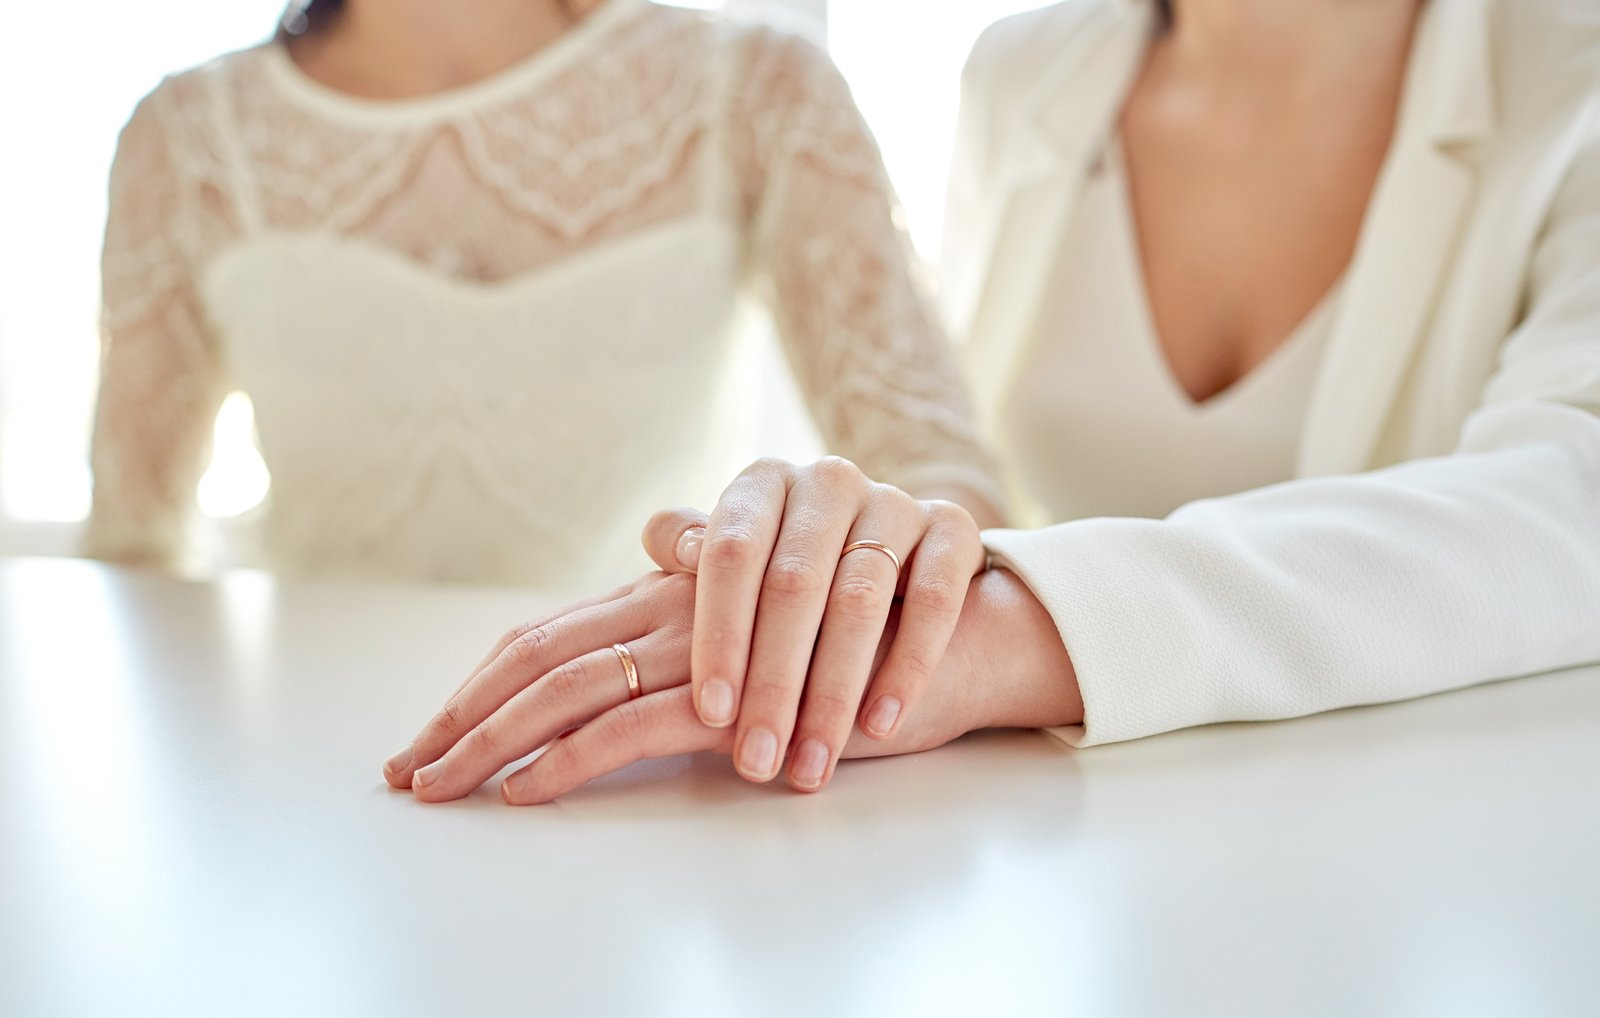 Duas mulheres com roupas brancas, com suas mãos esquerdas apoiadas em uma mesa. A mão de uma das mulheres está sobre a mão da outra.